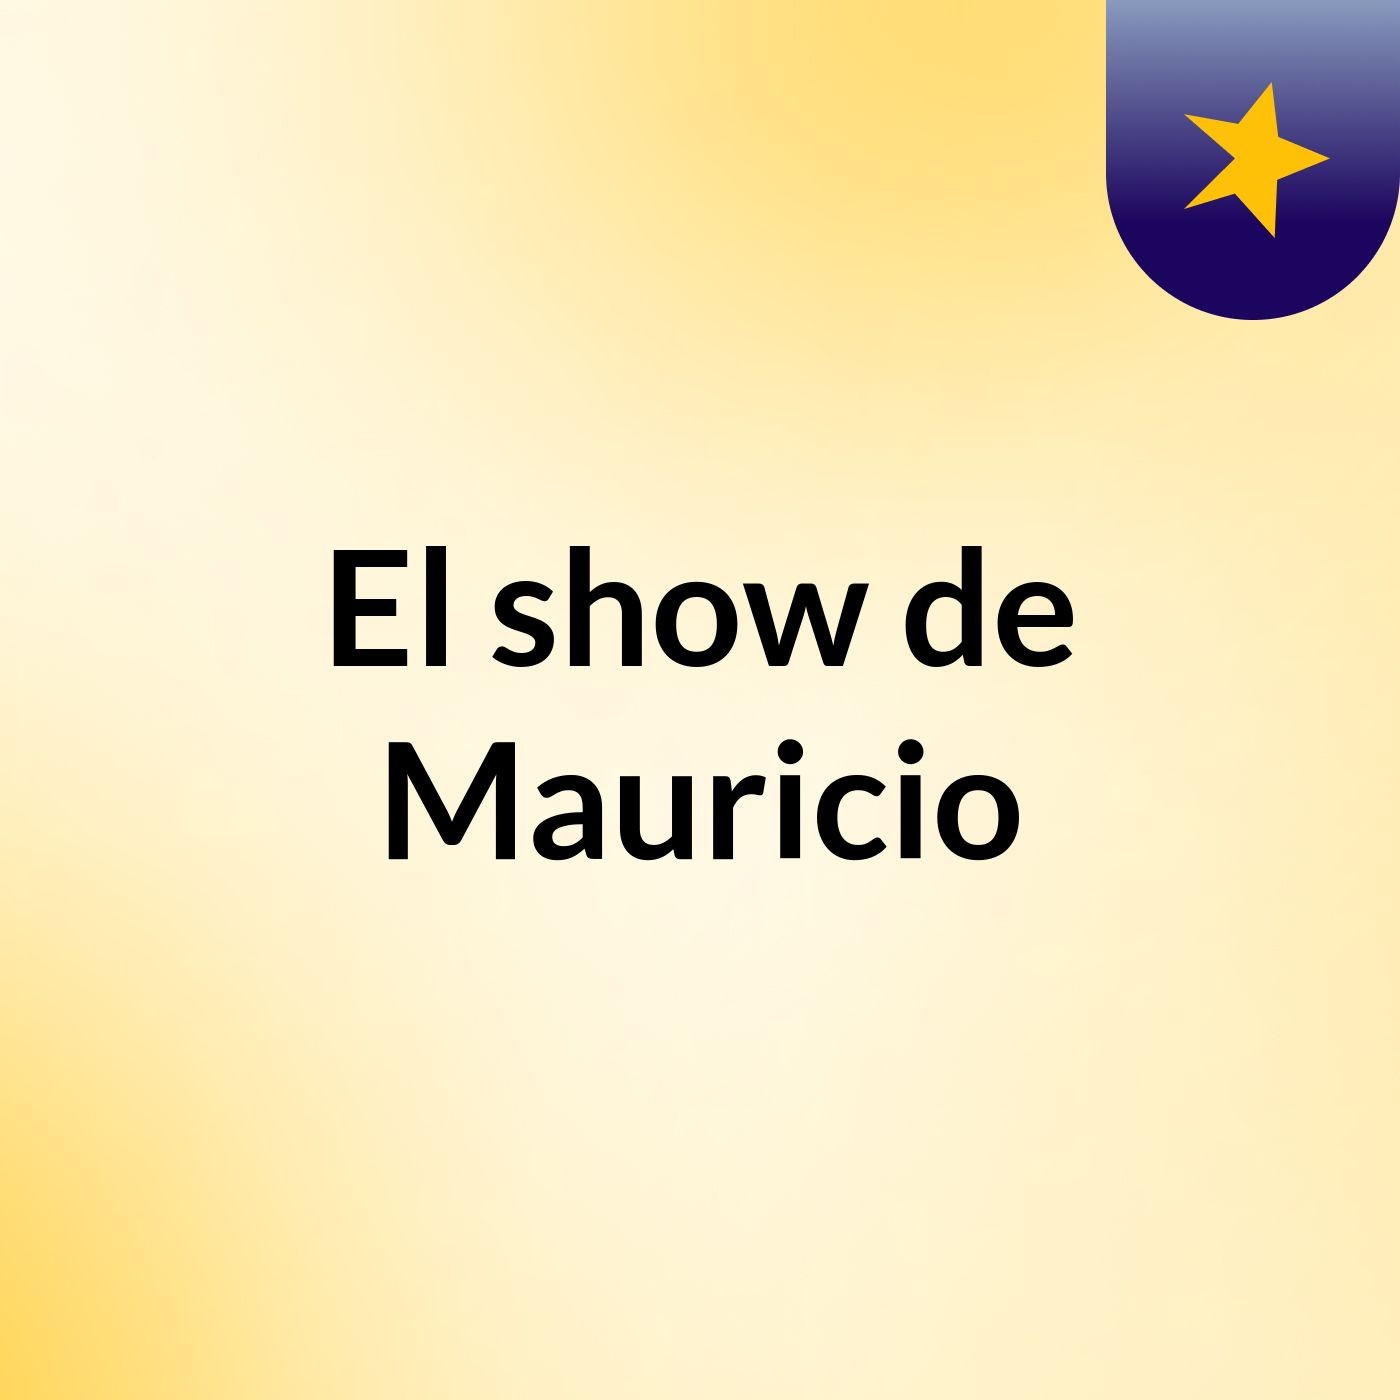 El show de Mauricio